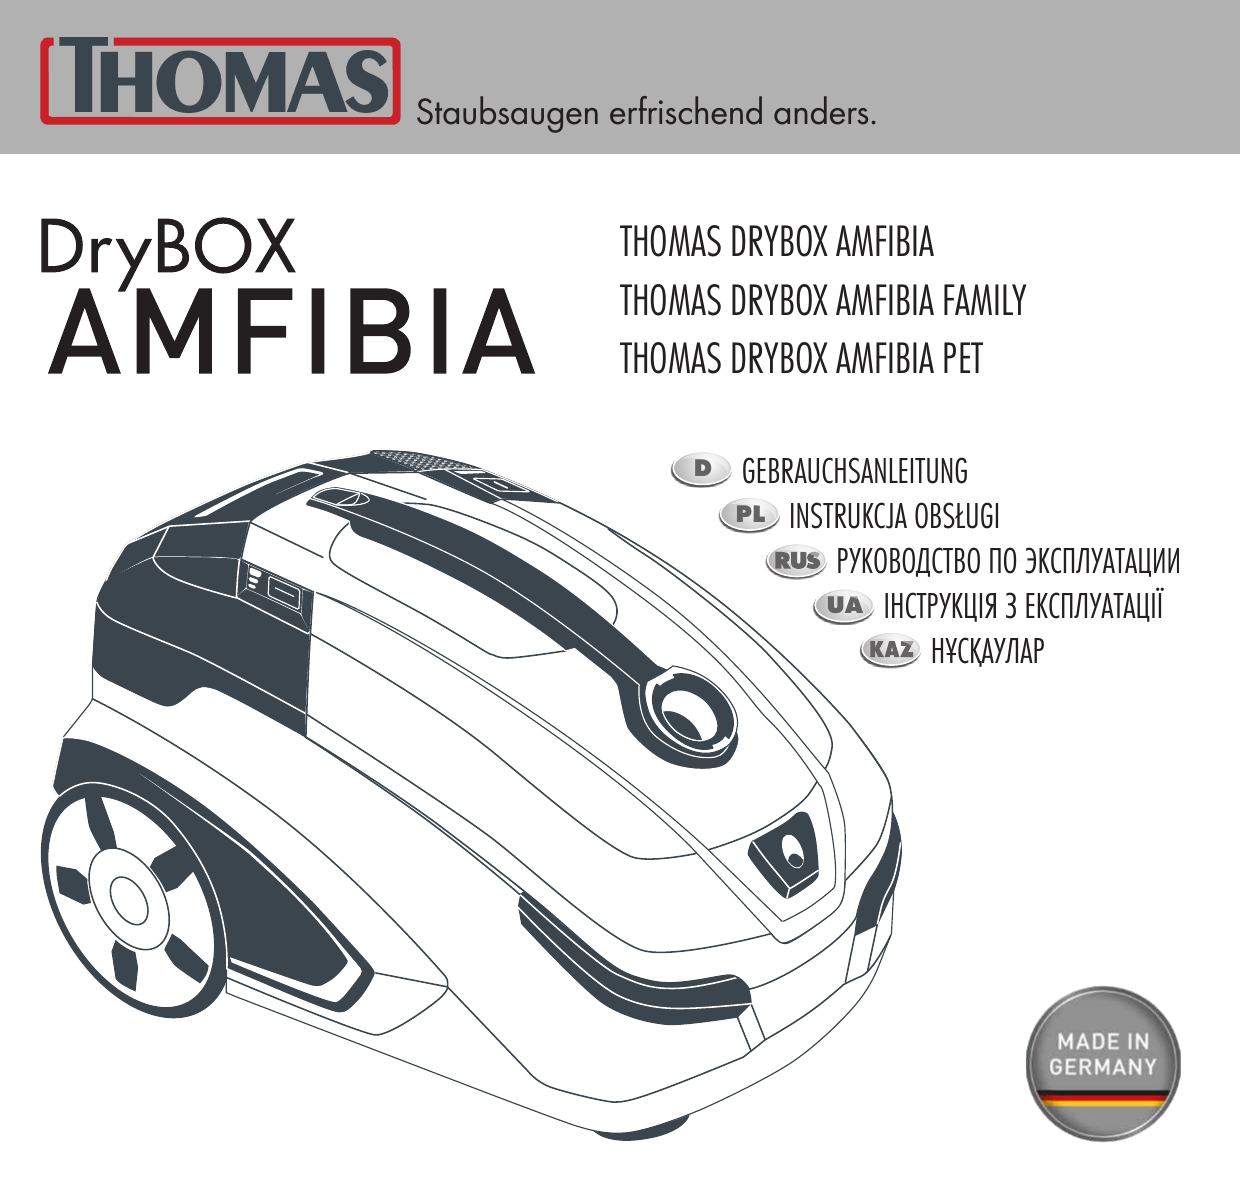 Thomas 788598 DRYBOX Amfibia Pet. Thomas 788599 DRYBOX Amfibia Family. Thomas DRYBOX Amfibia инструкция. Пылесос Thomas Amfibia инструкция. 788598 drybox amfibia pet